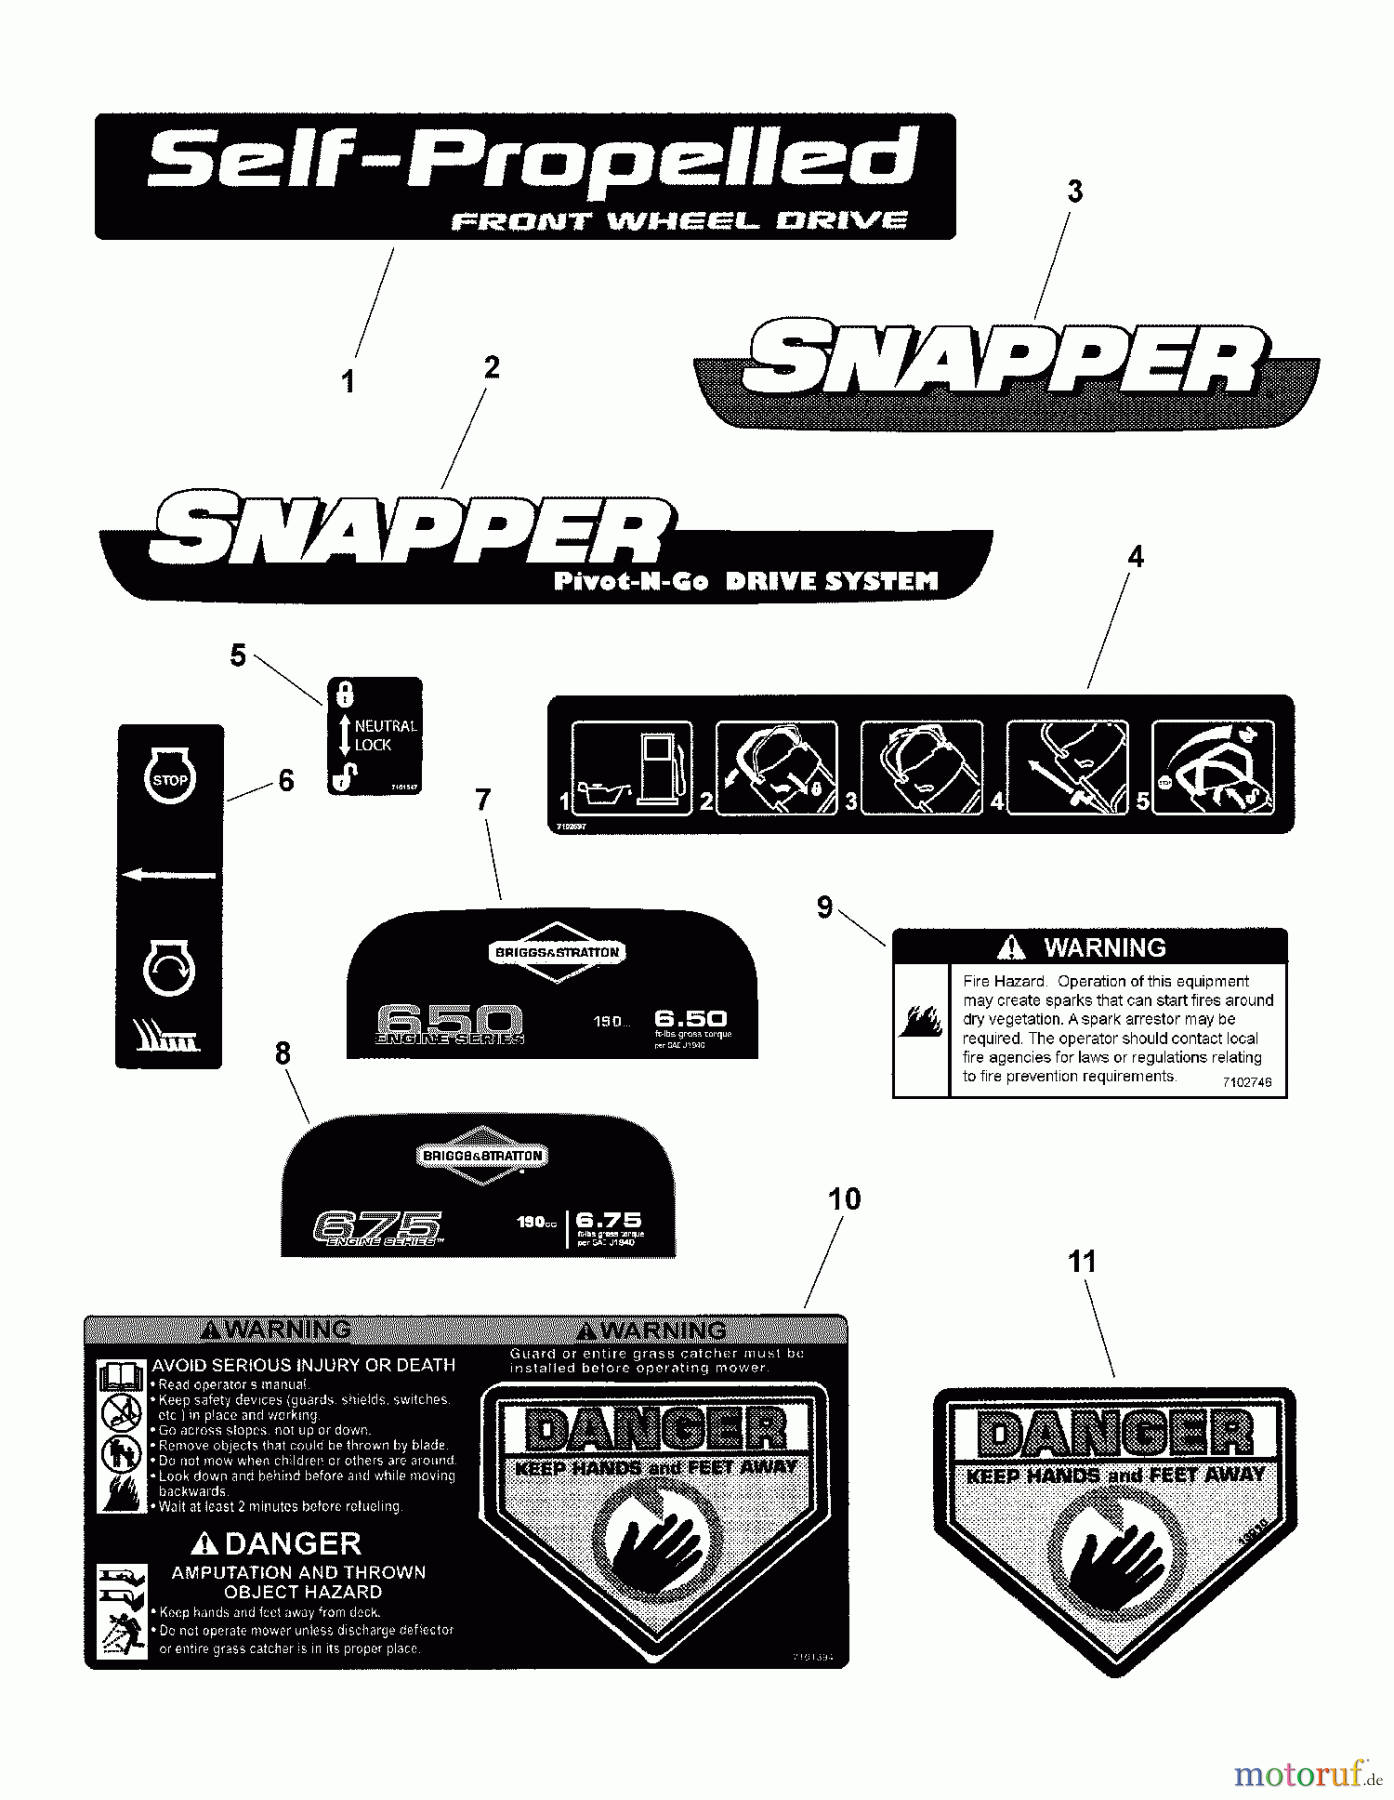  Snapper Rasenmäher NSPVH22675 (7800609) - Snapper 22